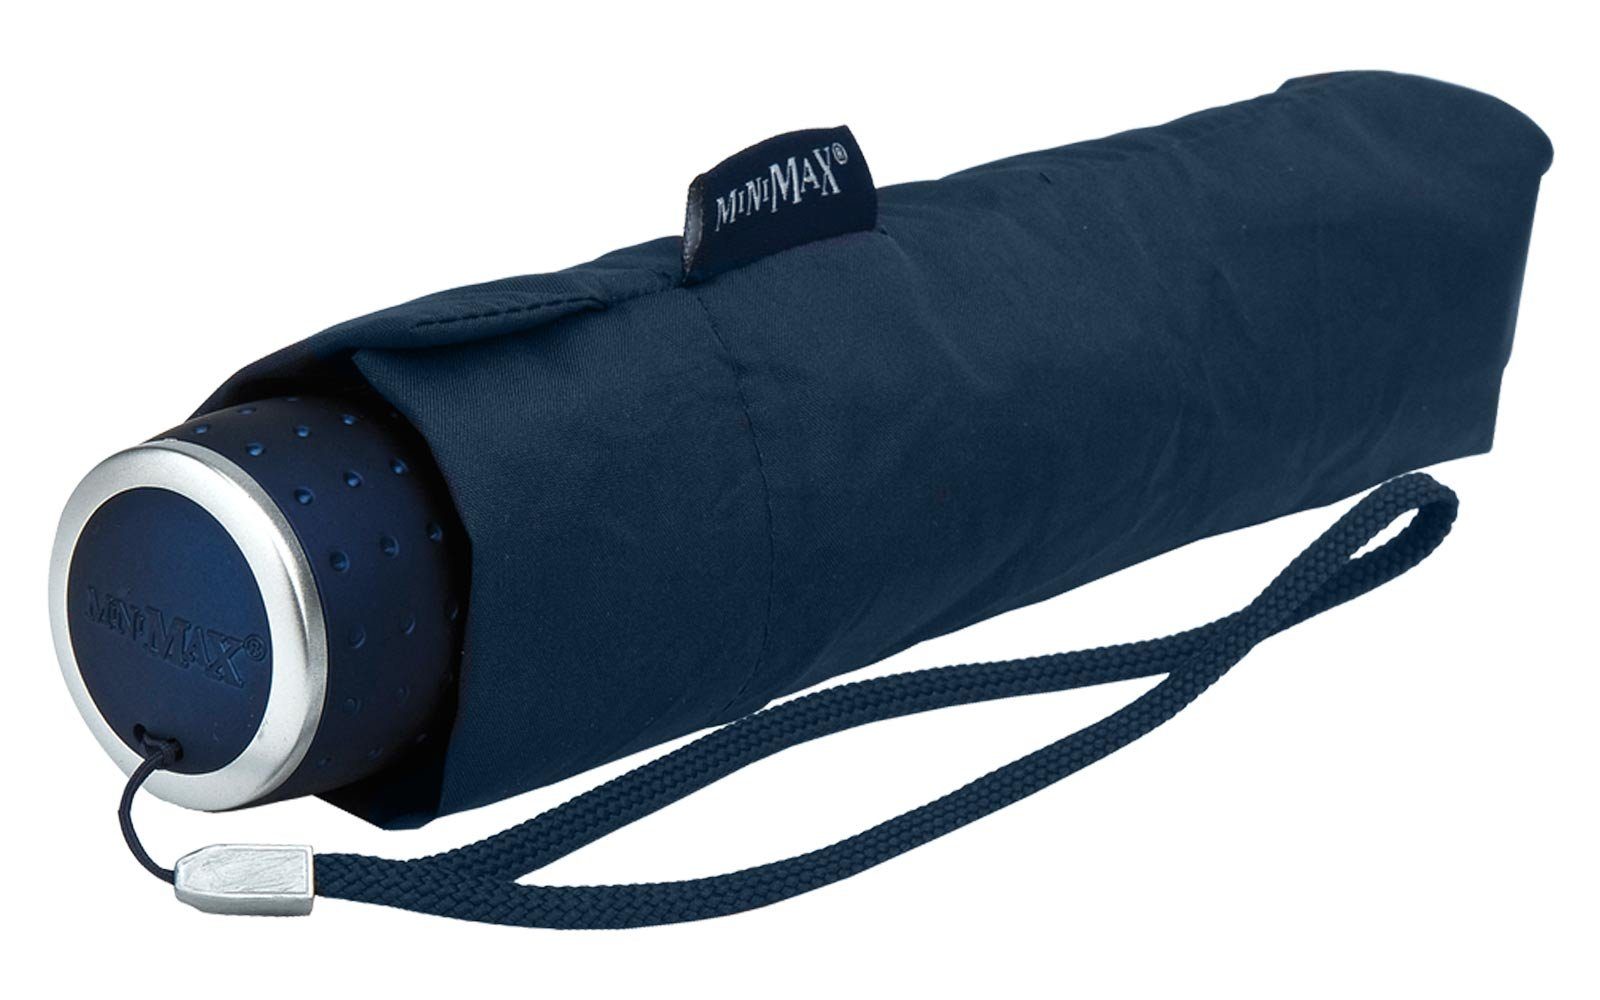 navy Tasche passt leichter in miniMAX® Schirm Handöffner, jjede kleiner Impliva Taschenregenschirm